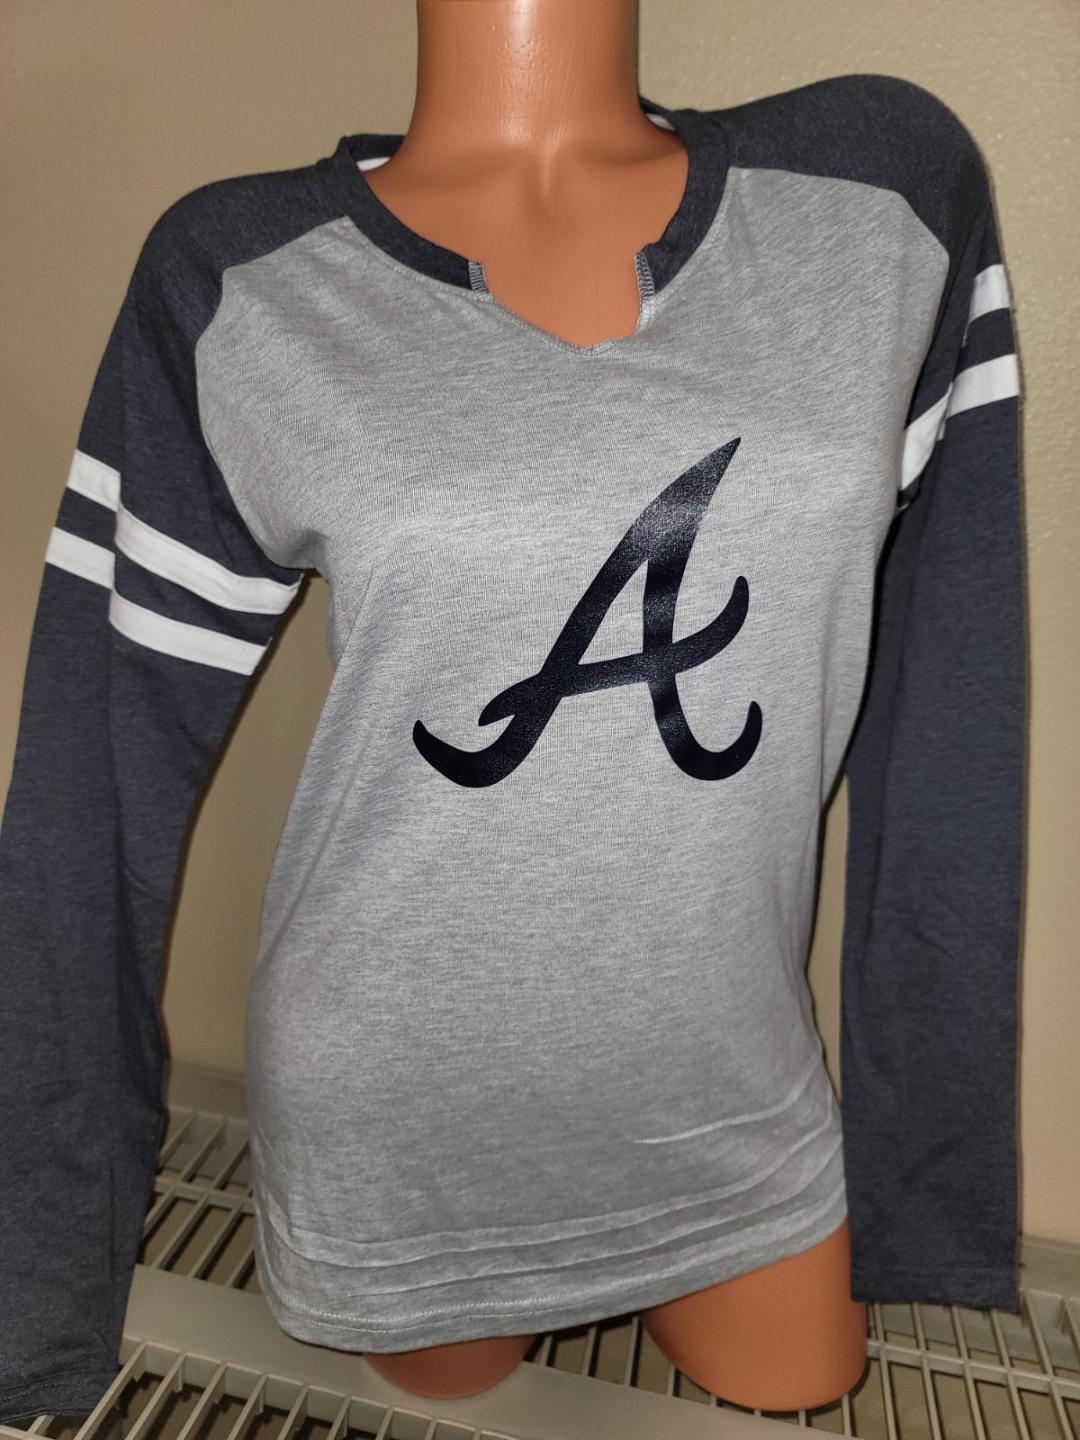 Atlanta Braves Ladies Apparel, Ladies Braves Clothing, Merchandise